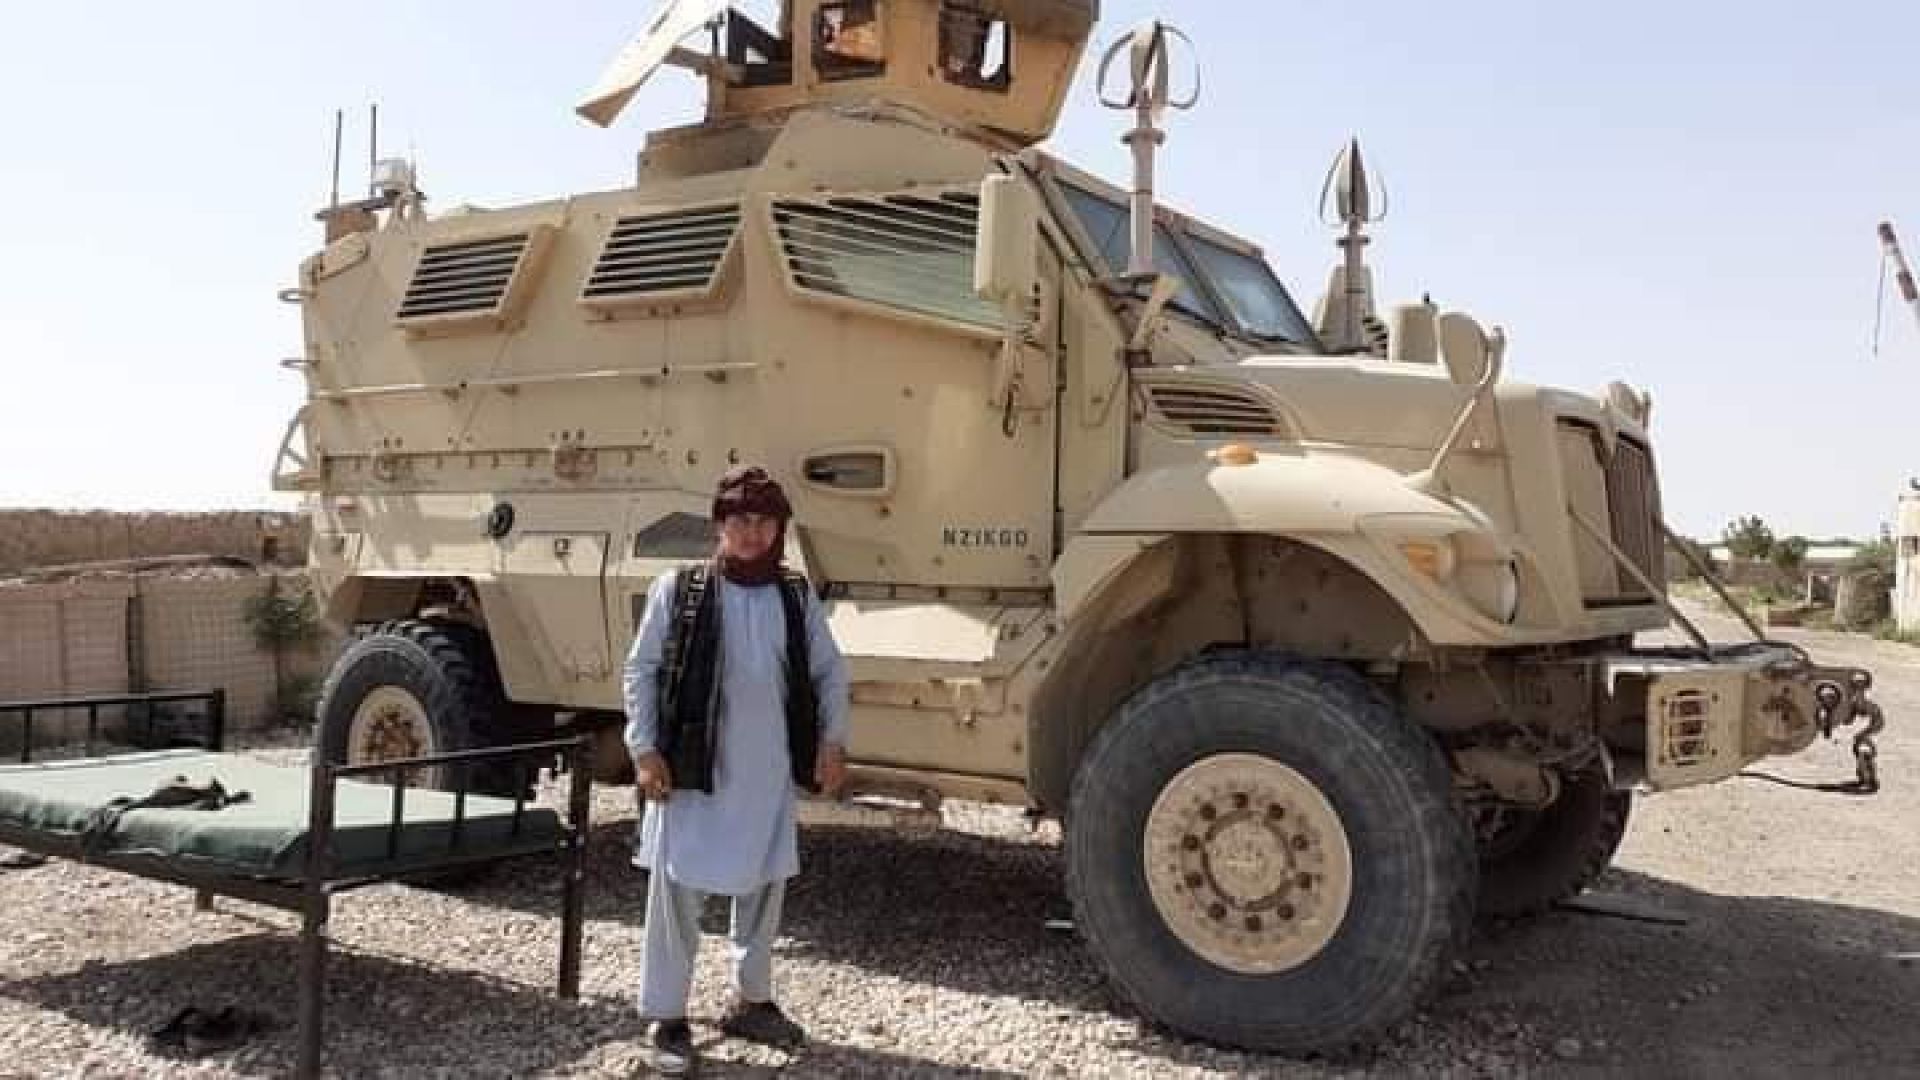  Една от многото американски бойни машшини, пленени от талибаните 